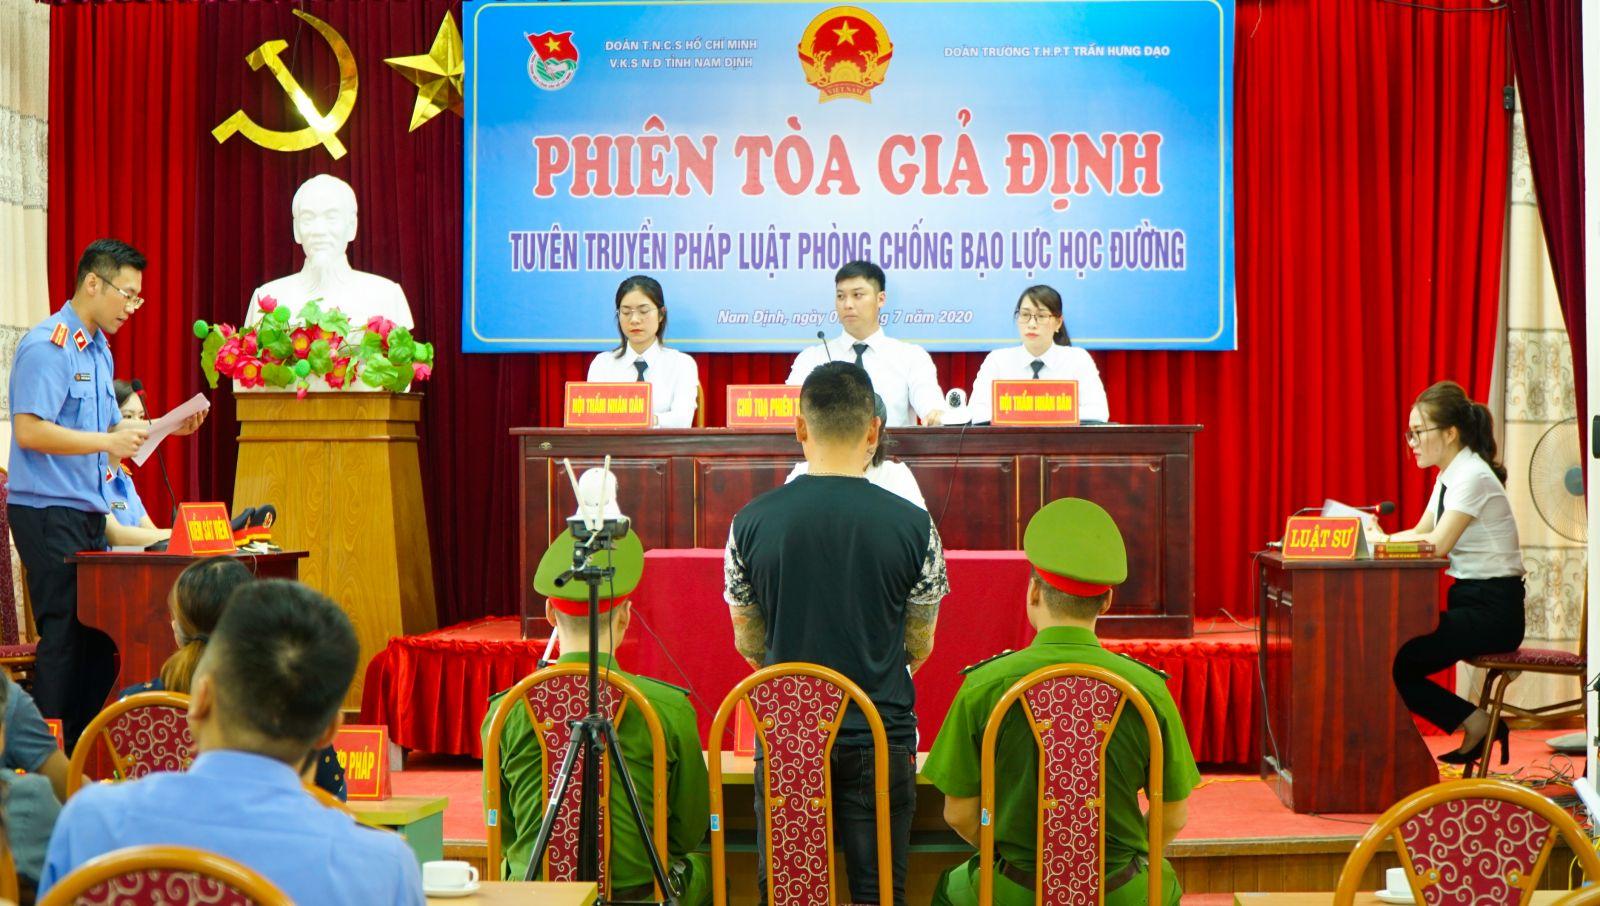 Viện Kiểm sát Nhân dân tỉnh Nam Định tổ chức “Phiên tòa giả định” tuyên truyền pháp luật phòng, chống bạo lực học đường